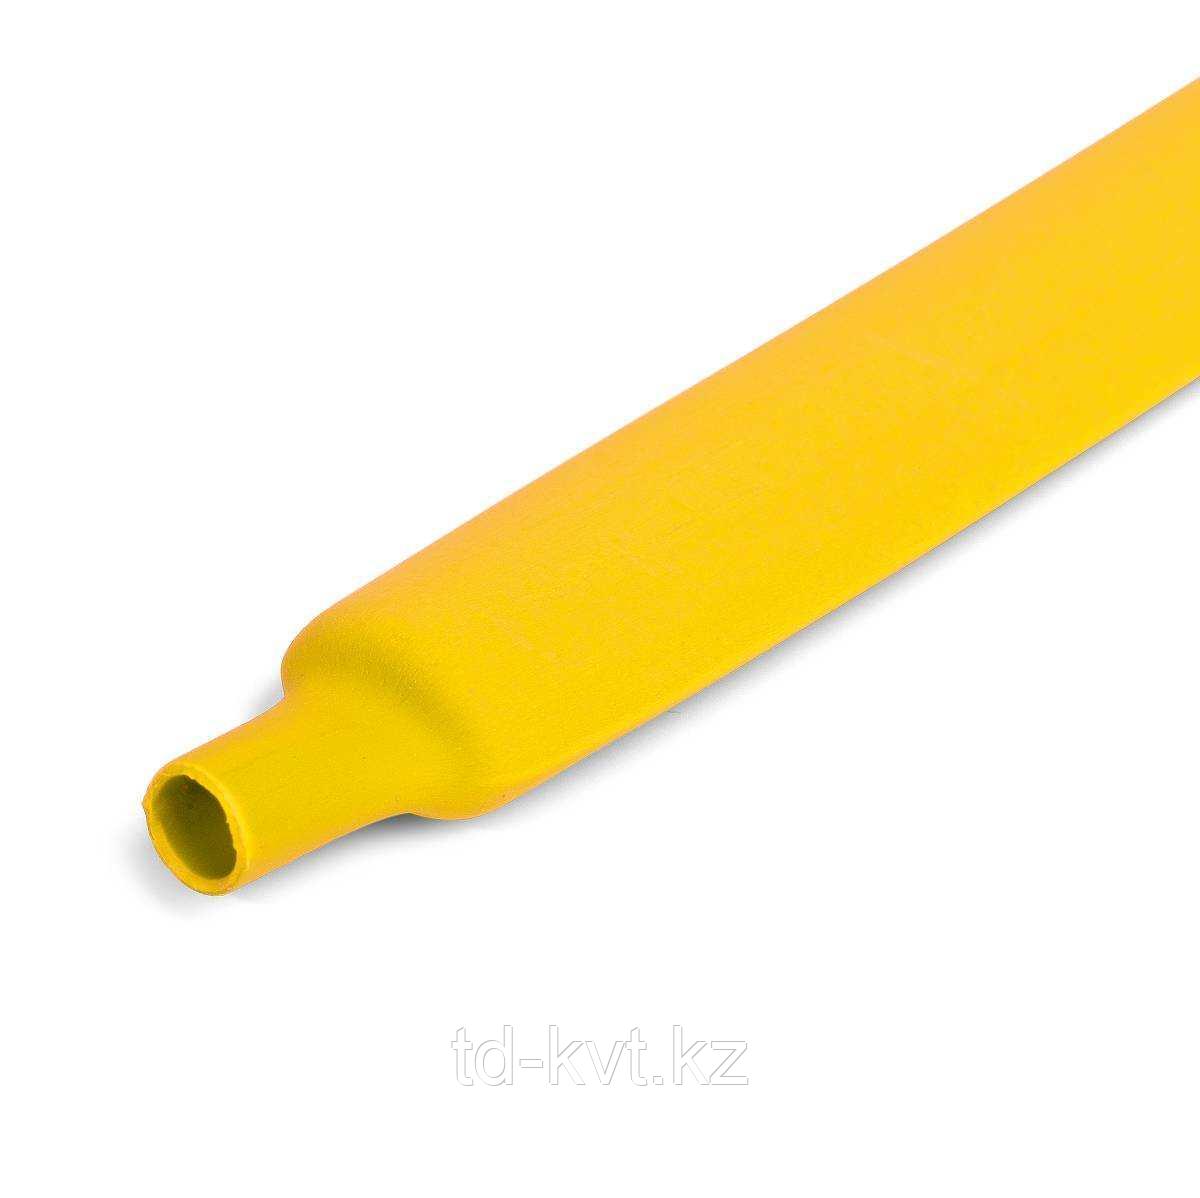 Цветная термоусадочная трубка с коэффициентом усадки 2:1 ТУТ (HF)-16/8, желт